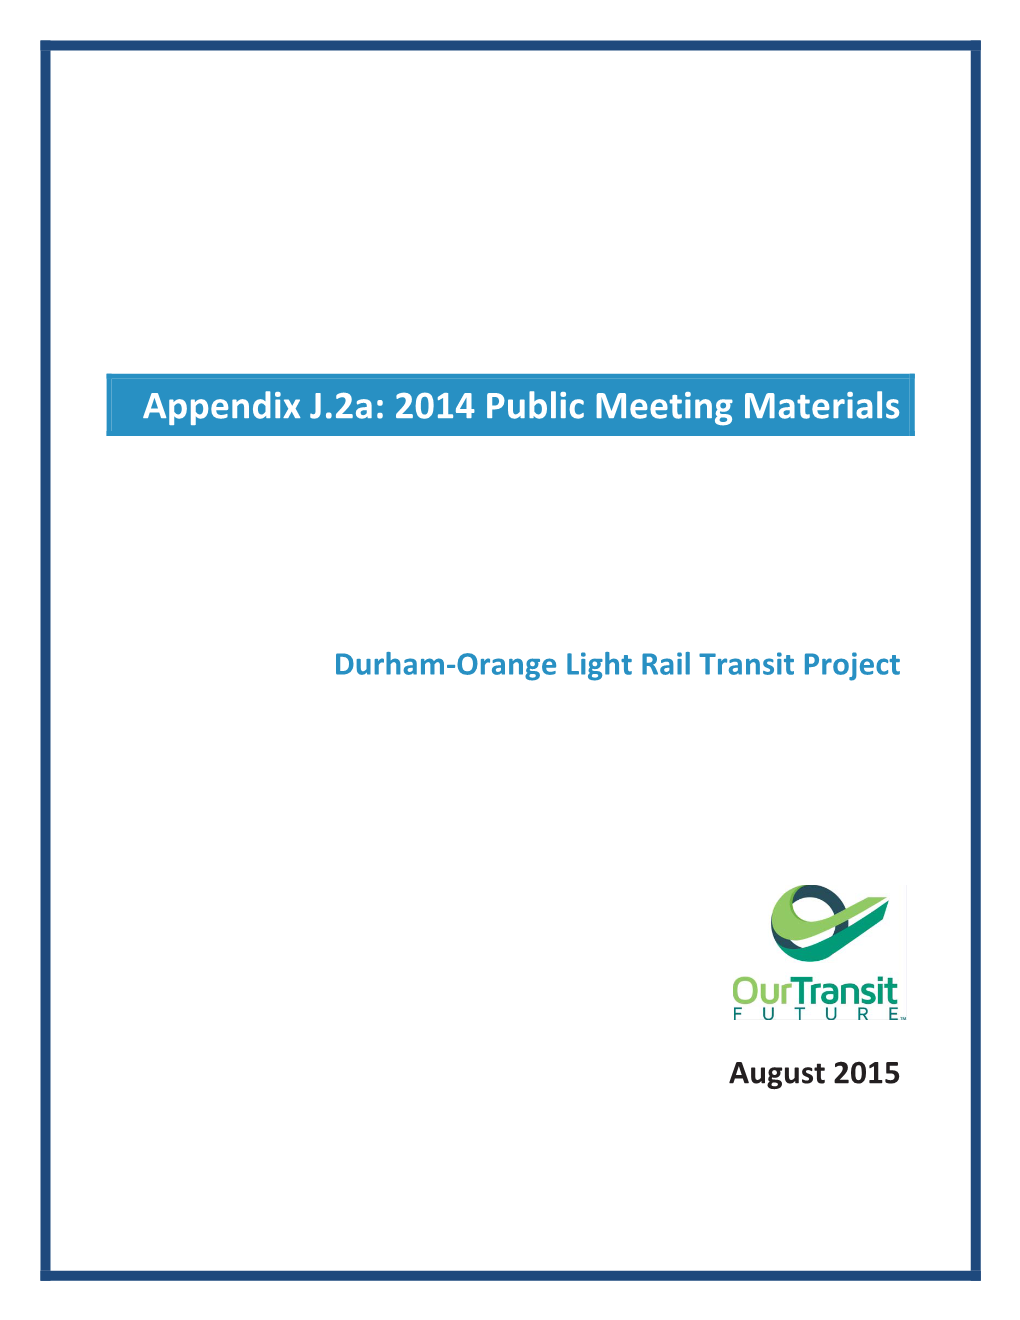 Appendix J.2A: 2014 Public Meeting Materials